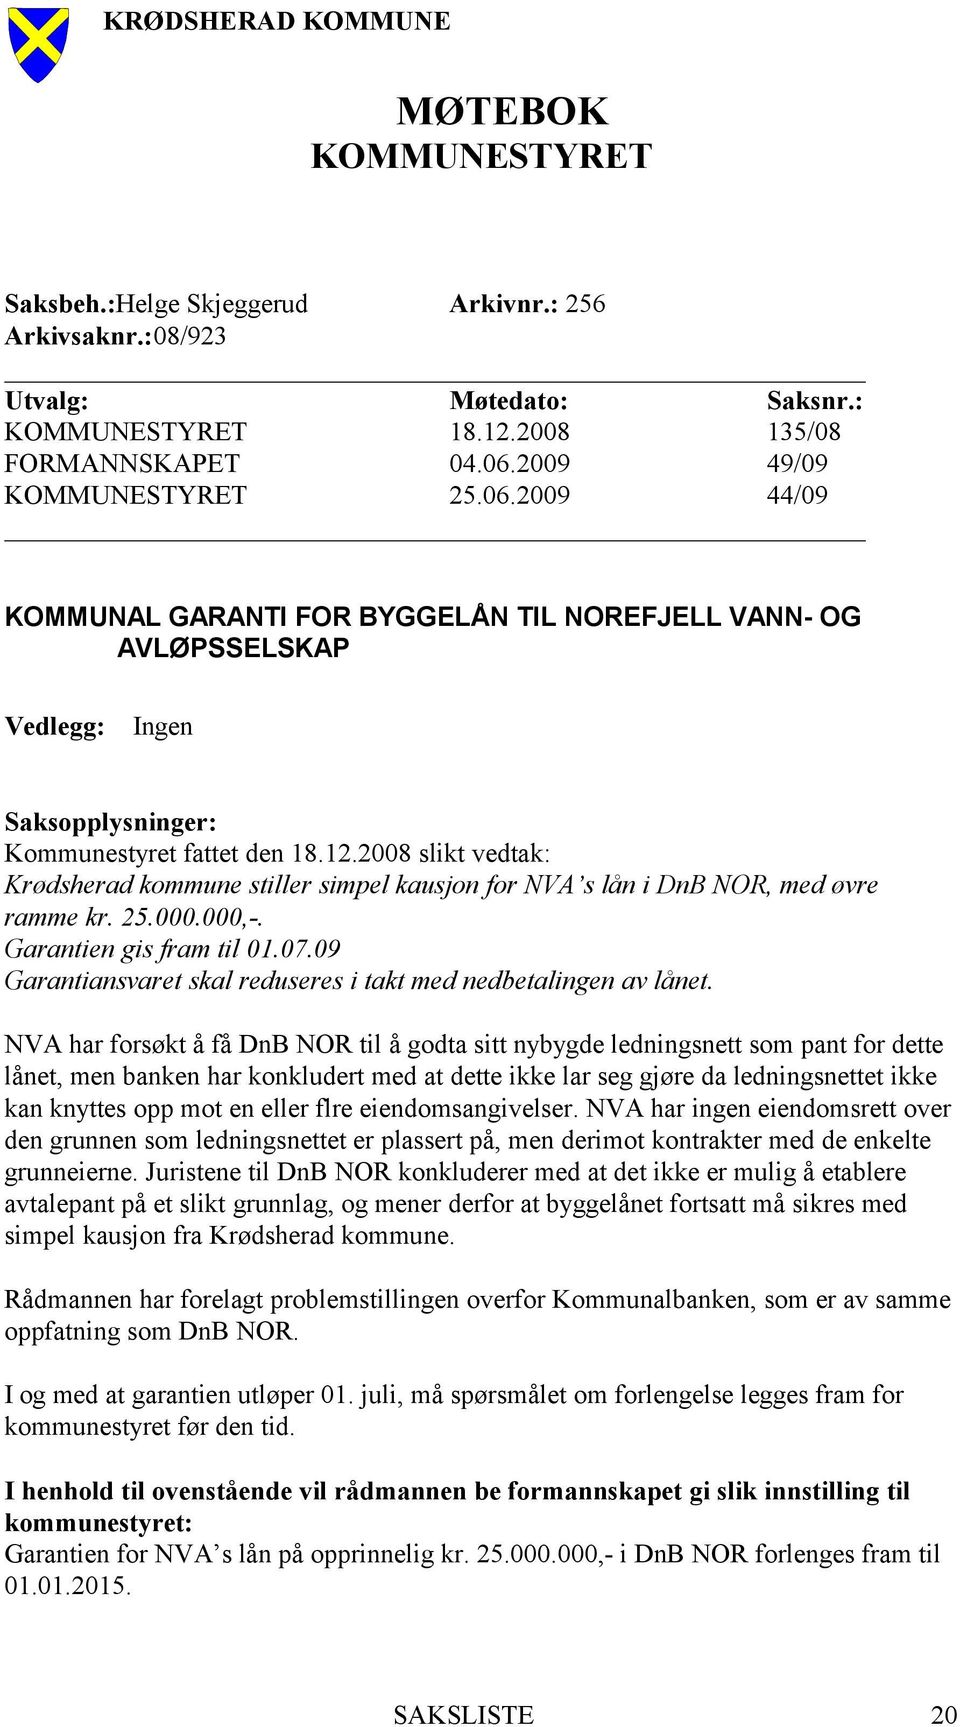 2008 slikt vedtak: Krødsherad kommune stiller simpel kausjon for NVA s lån i DnB NOR, med øvre ramme kr. 25.000.000,-. Garantien gis fram til 01.07.